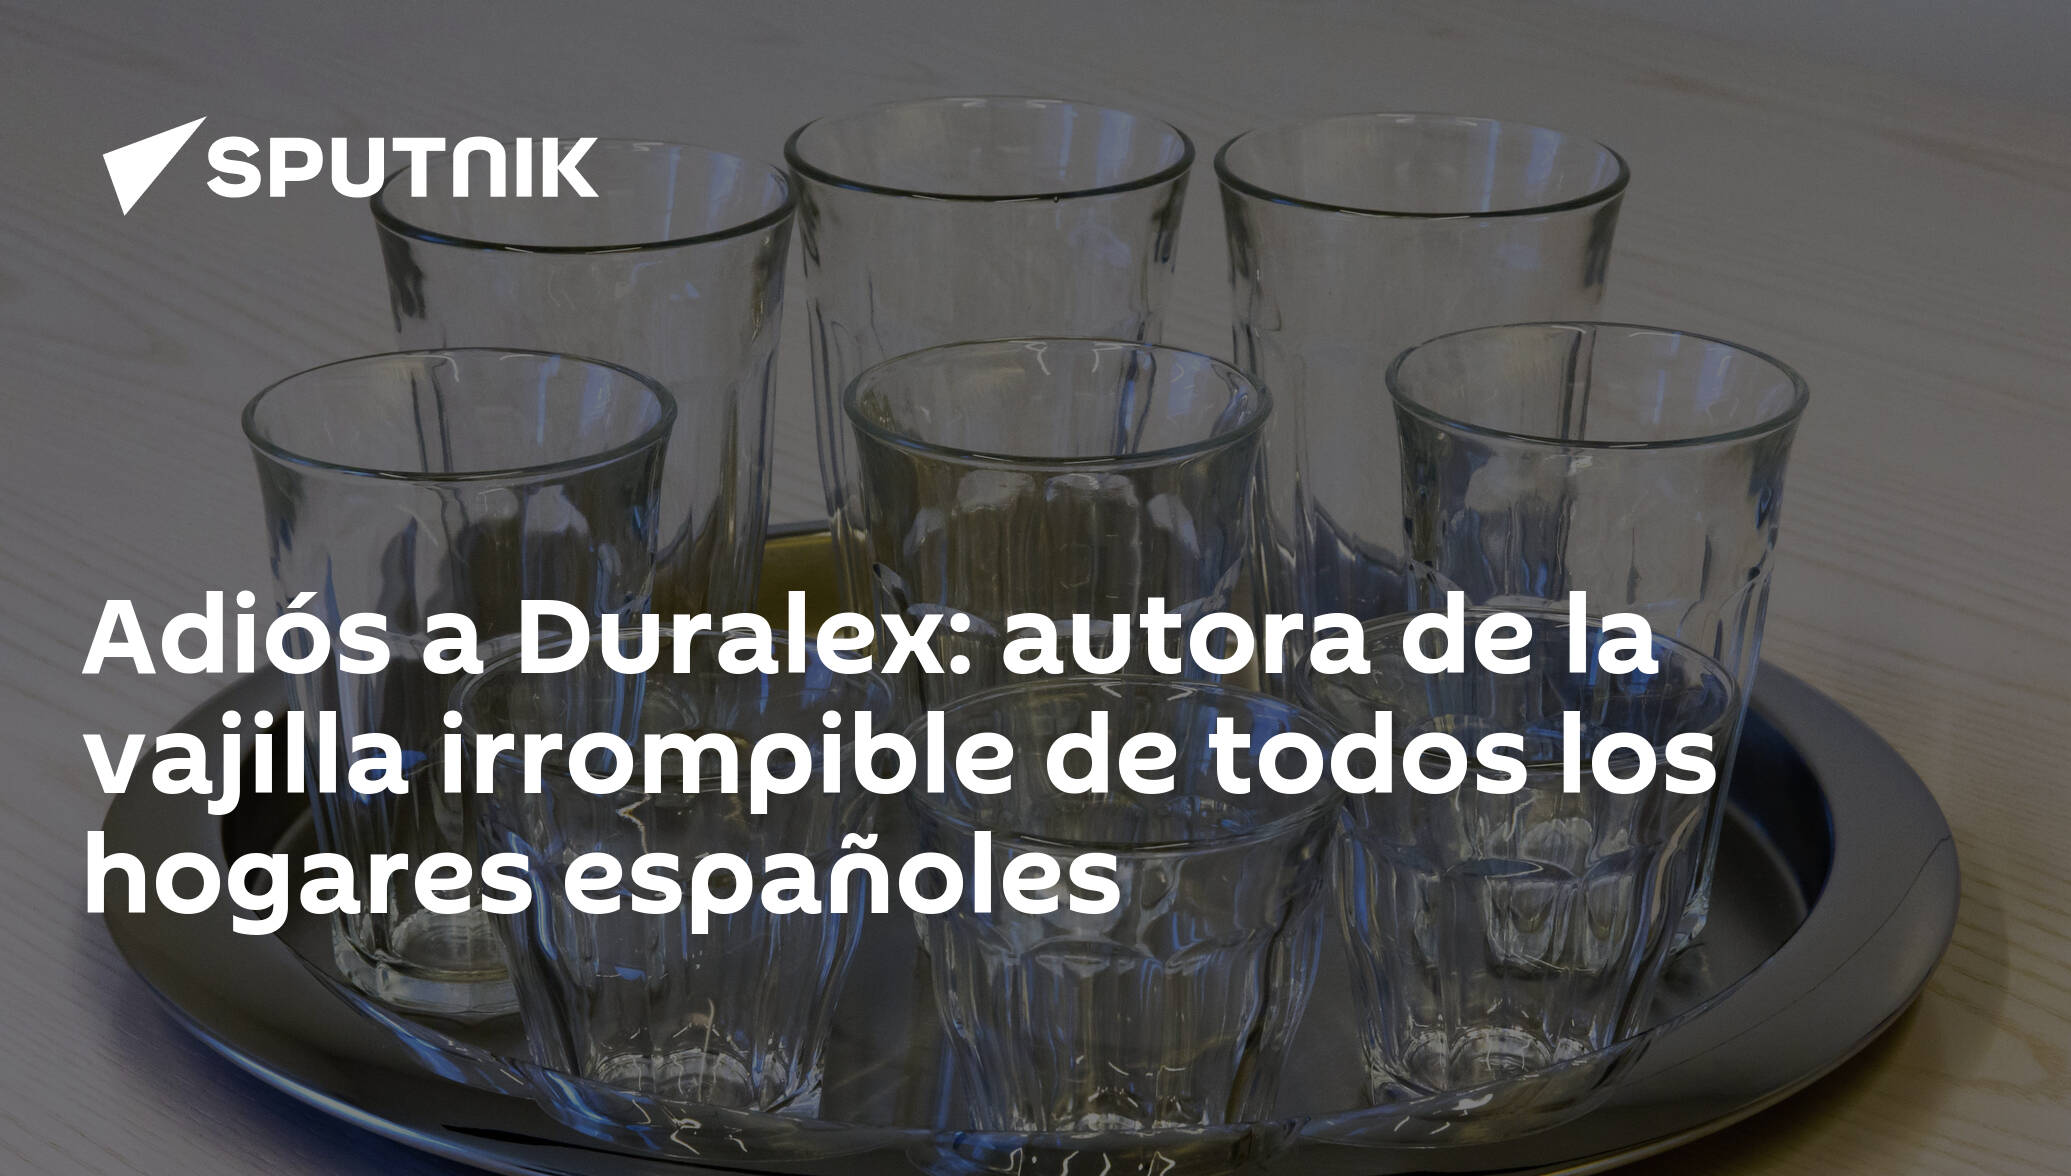 Quiebra Duralex, la empresa de la vajilla irrompible - Libre Mercado